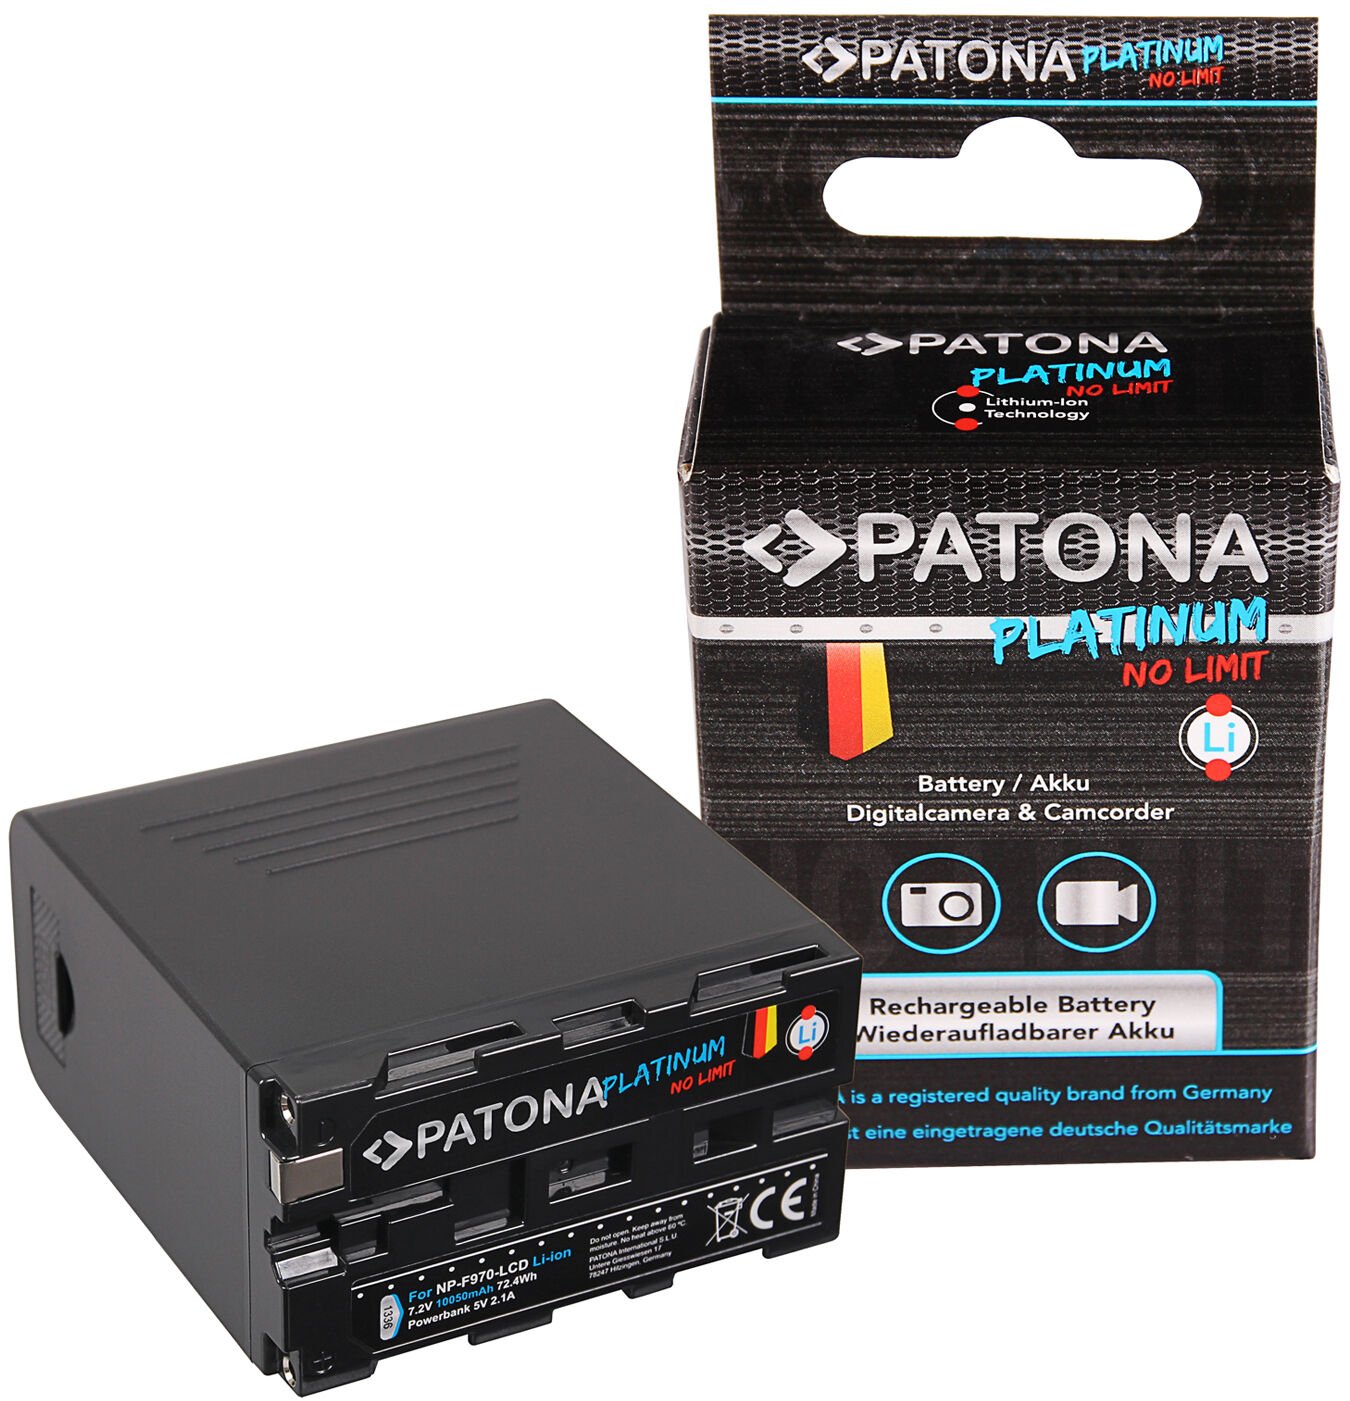 PATONA Bateria Sony NP-F970 Powerbank LCD 5V/2A USB (10500mAh)